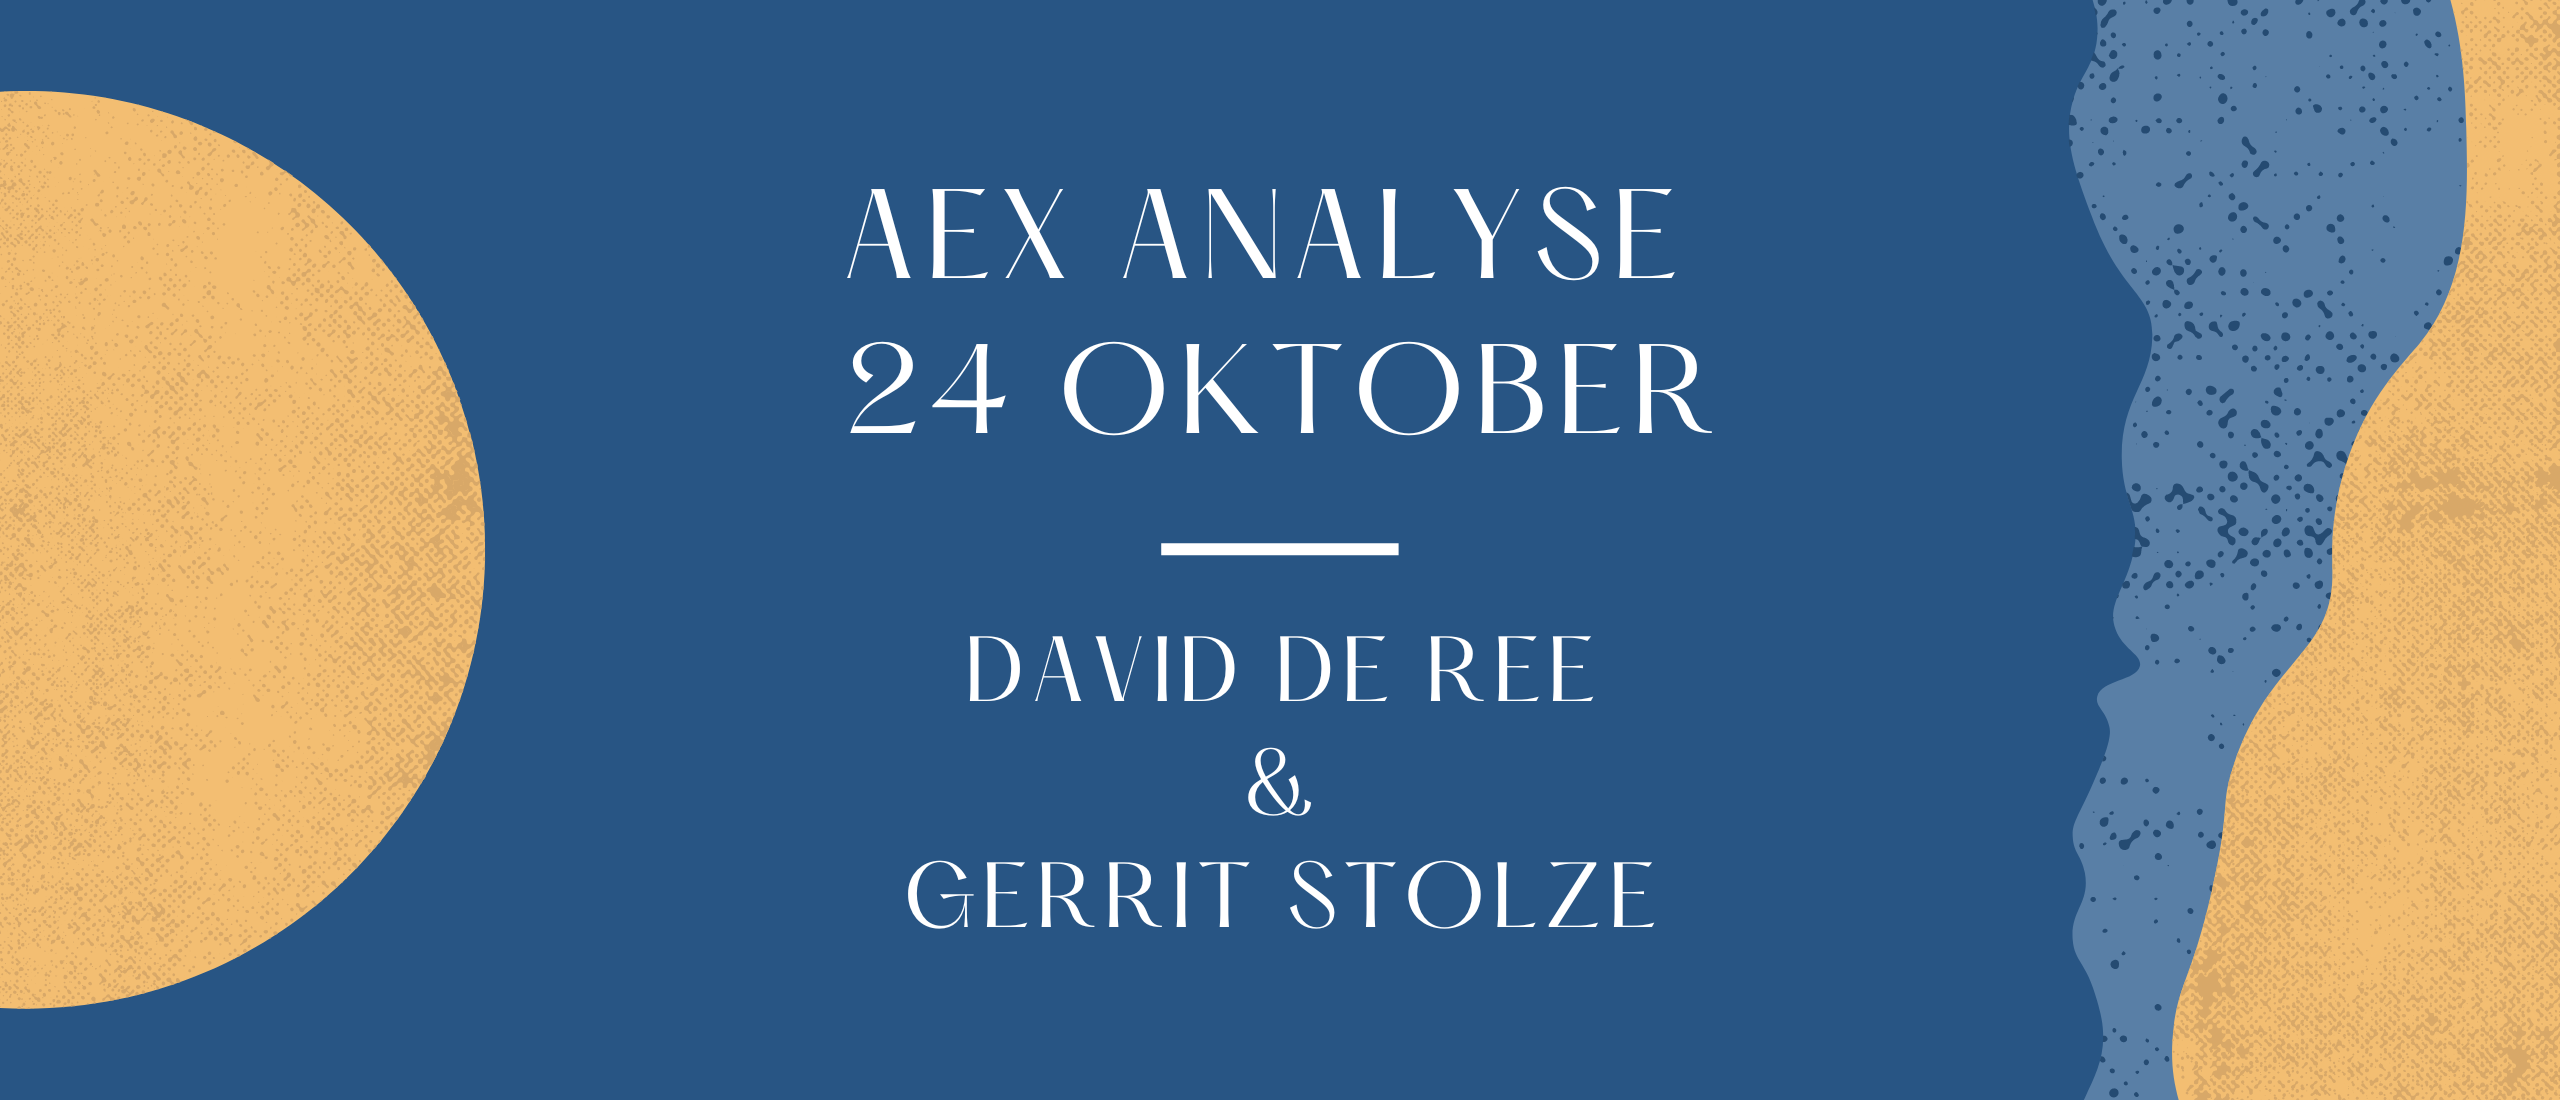 De beste optie keuze voor de AEX analyse 24-10-2022